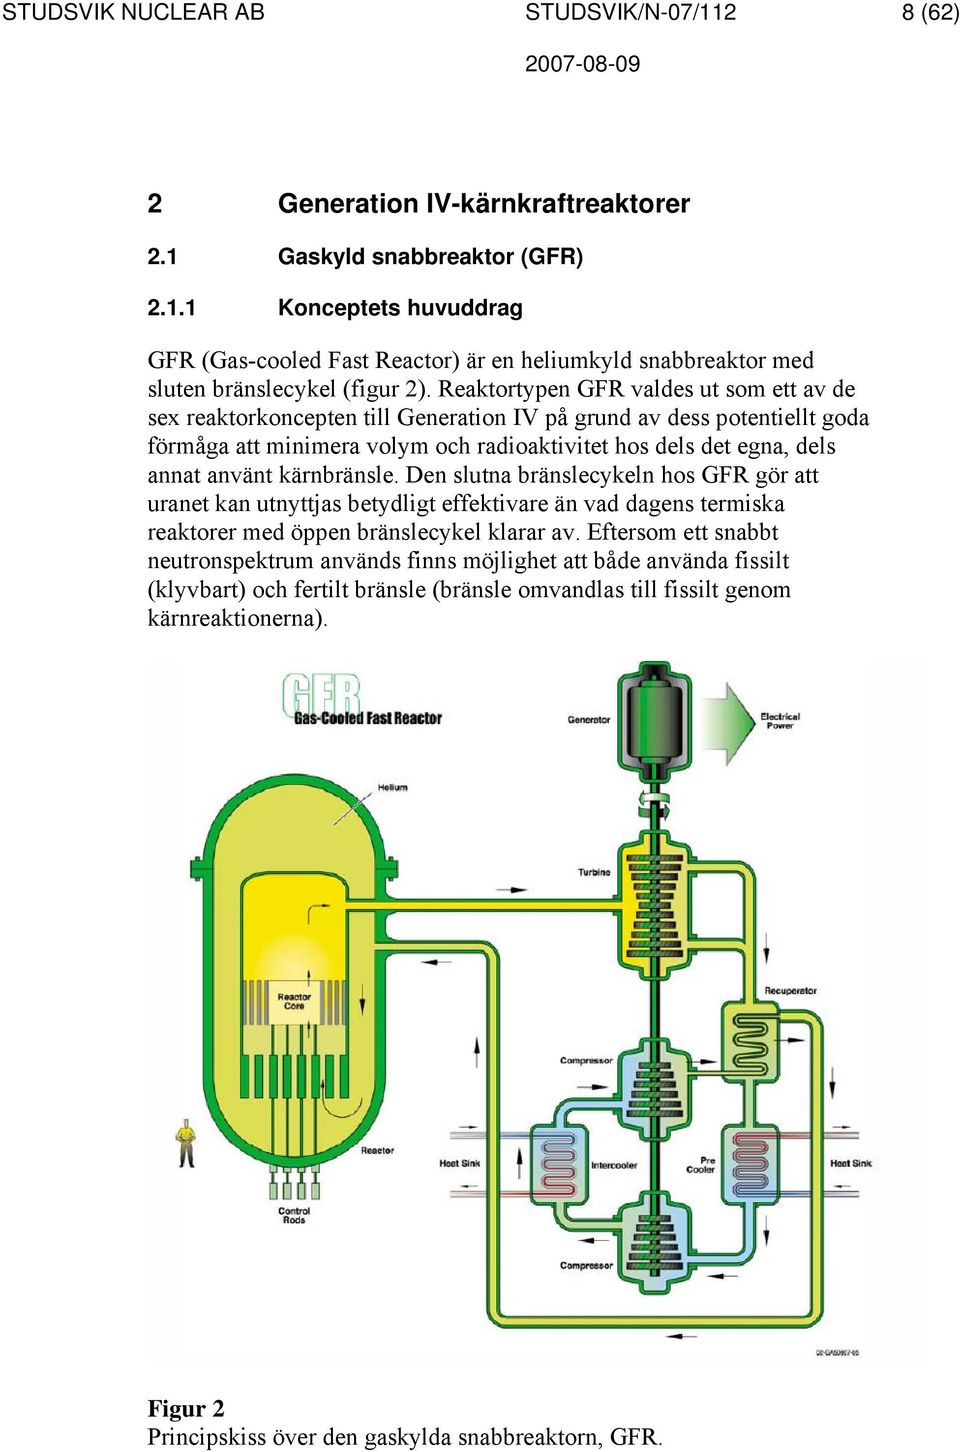 kärnbränsle. Den slutna bränslecykeln hos GFR gör att uranet kan utnyttjas betydligt effektivare än vad dagens termiska reaktorer med öppen bränslecykel klarar av.